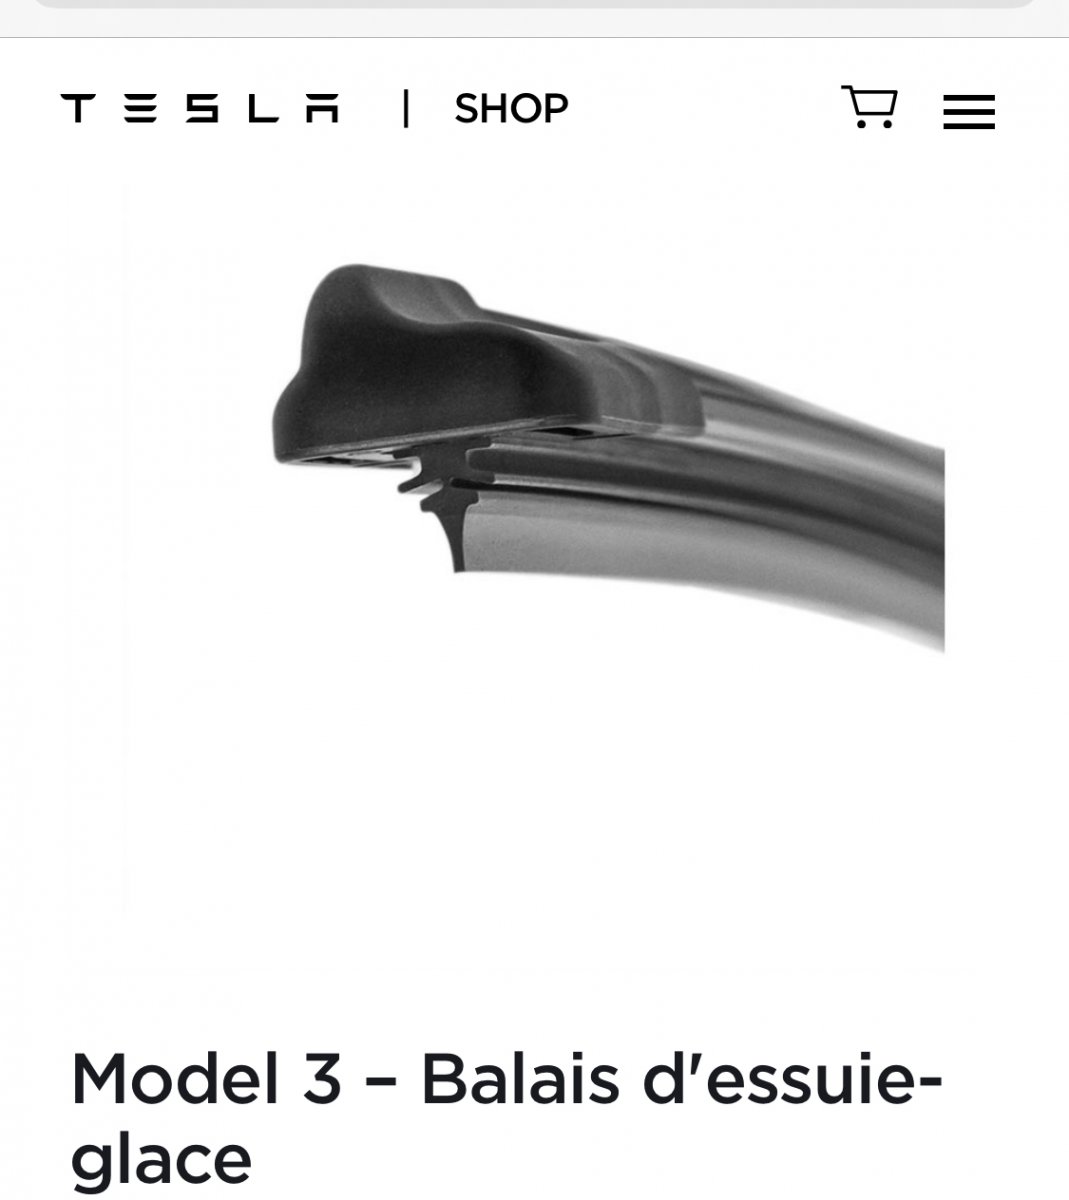 Balais d'essuie-glace pour la M3 ? - Page 3 - Tesla Model 3 - Forum  Automobile Propre